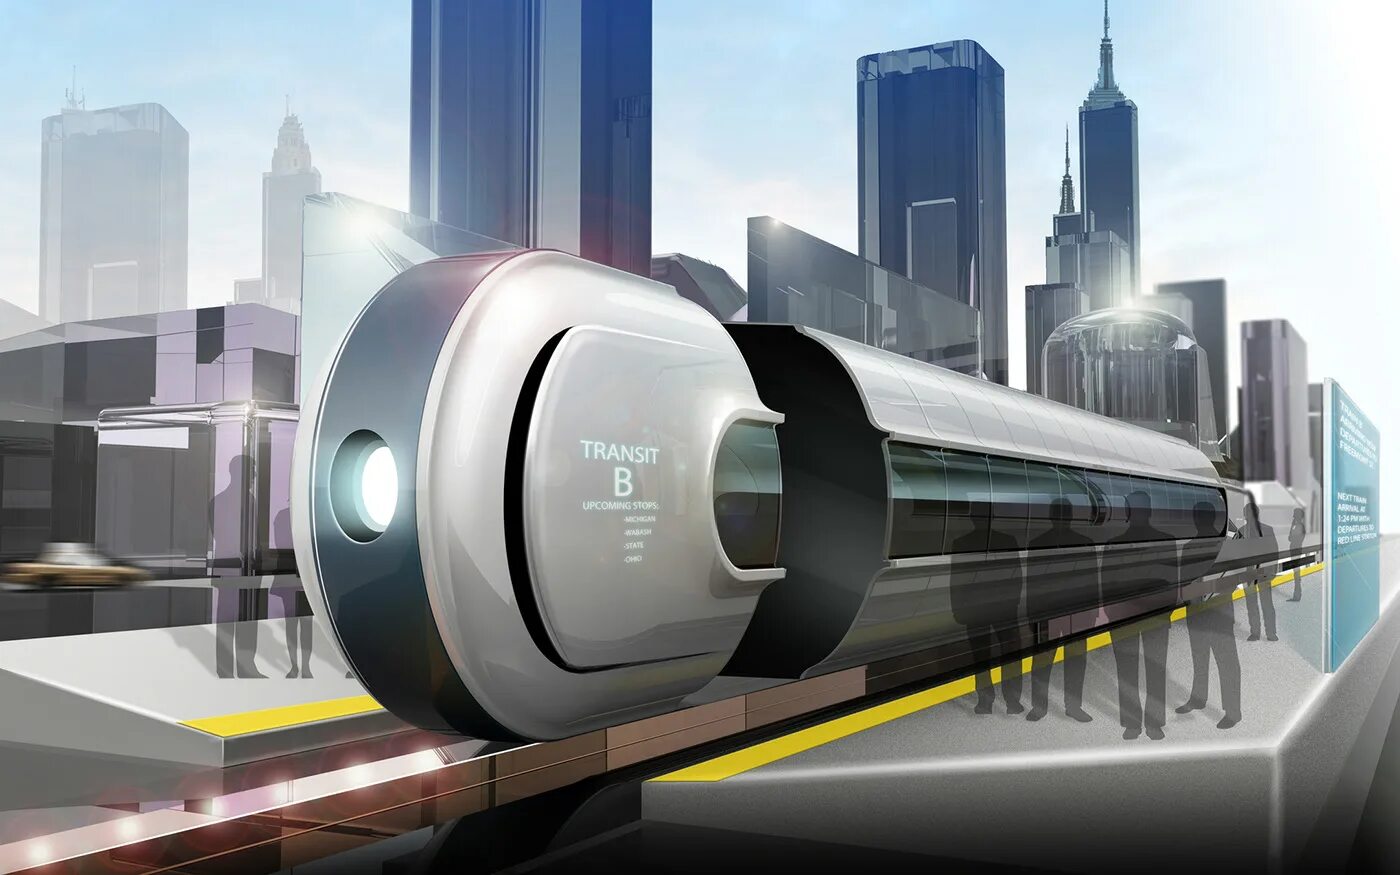 Маглев вагон. Транспорт будущего. Пассажирский транспорт будущего. Наземный транспорт будущего. Лишены будущего